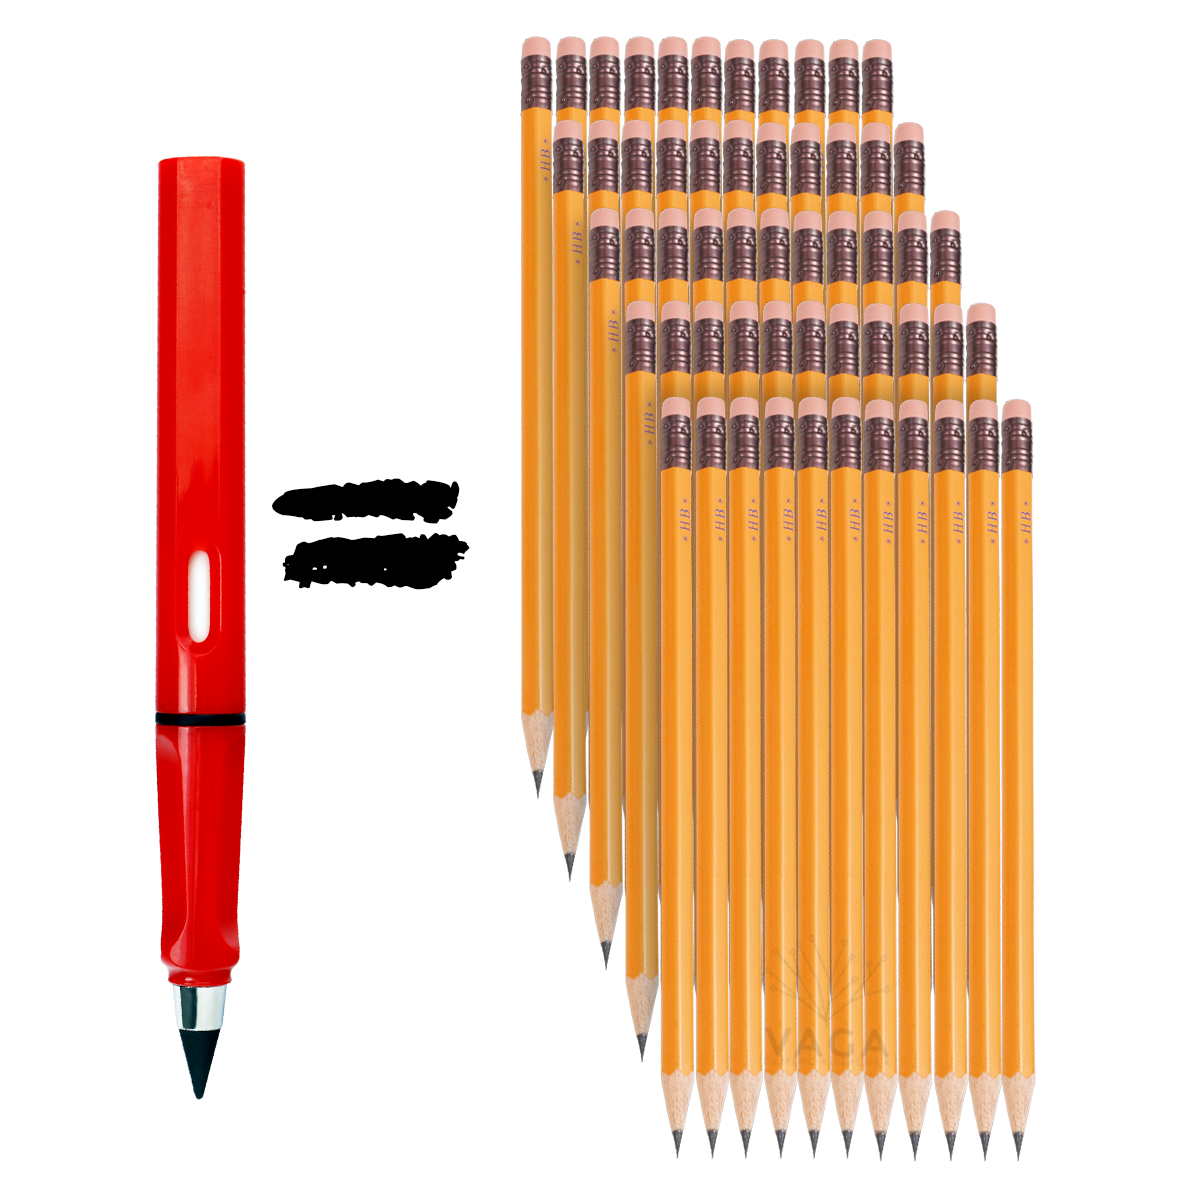 El lápiz infinito que nunca se gasta